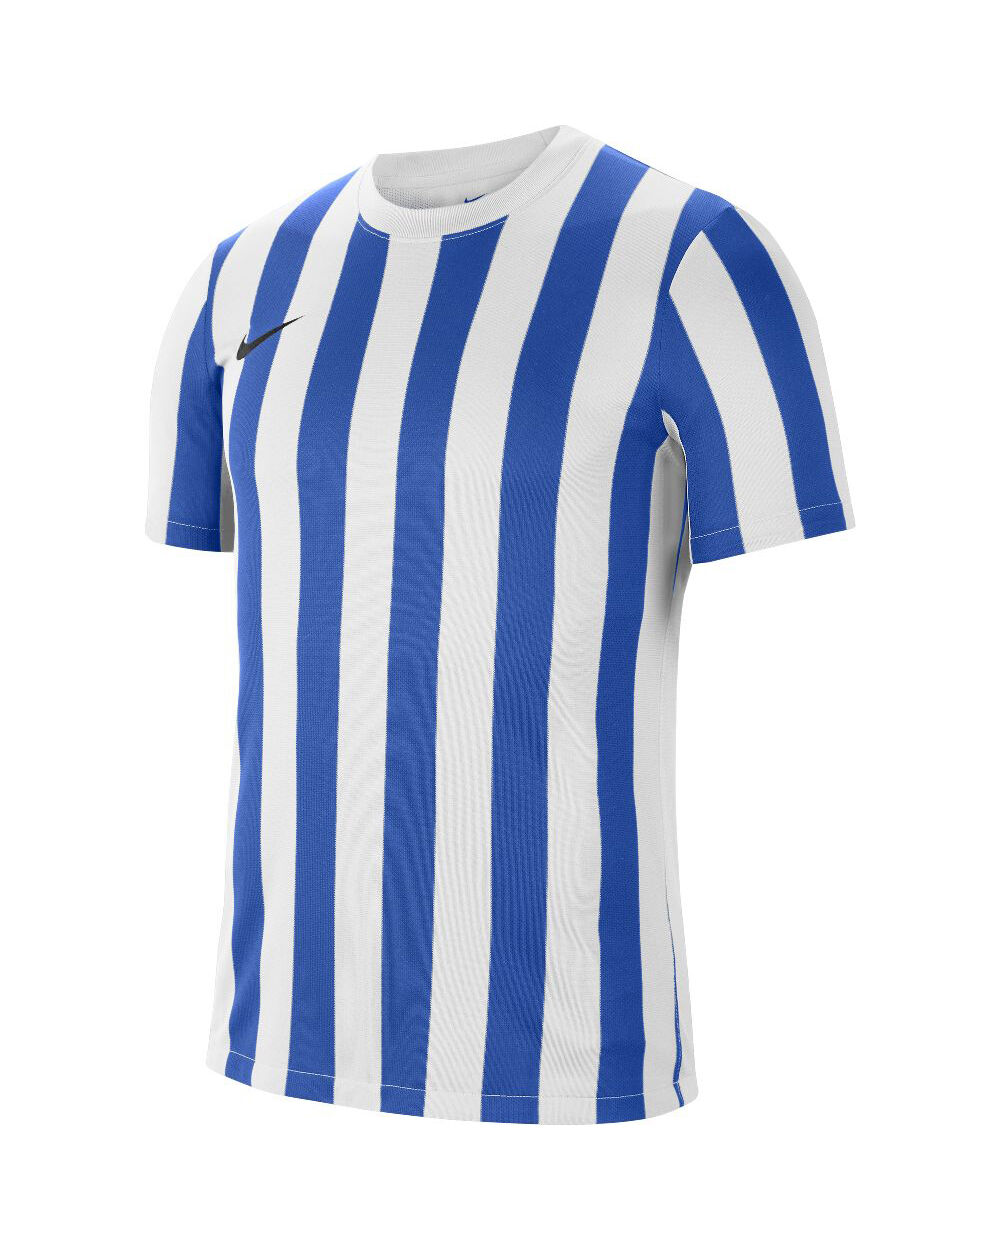 Nike Maglia Striped Division IV Blu Bianco e Reale per Uomo CW3813-102 S